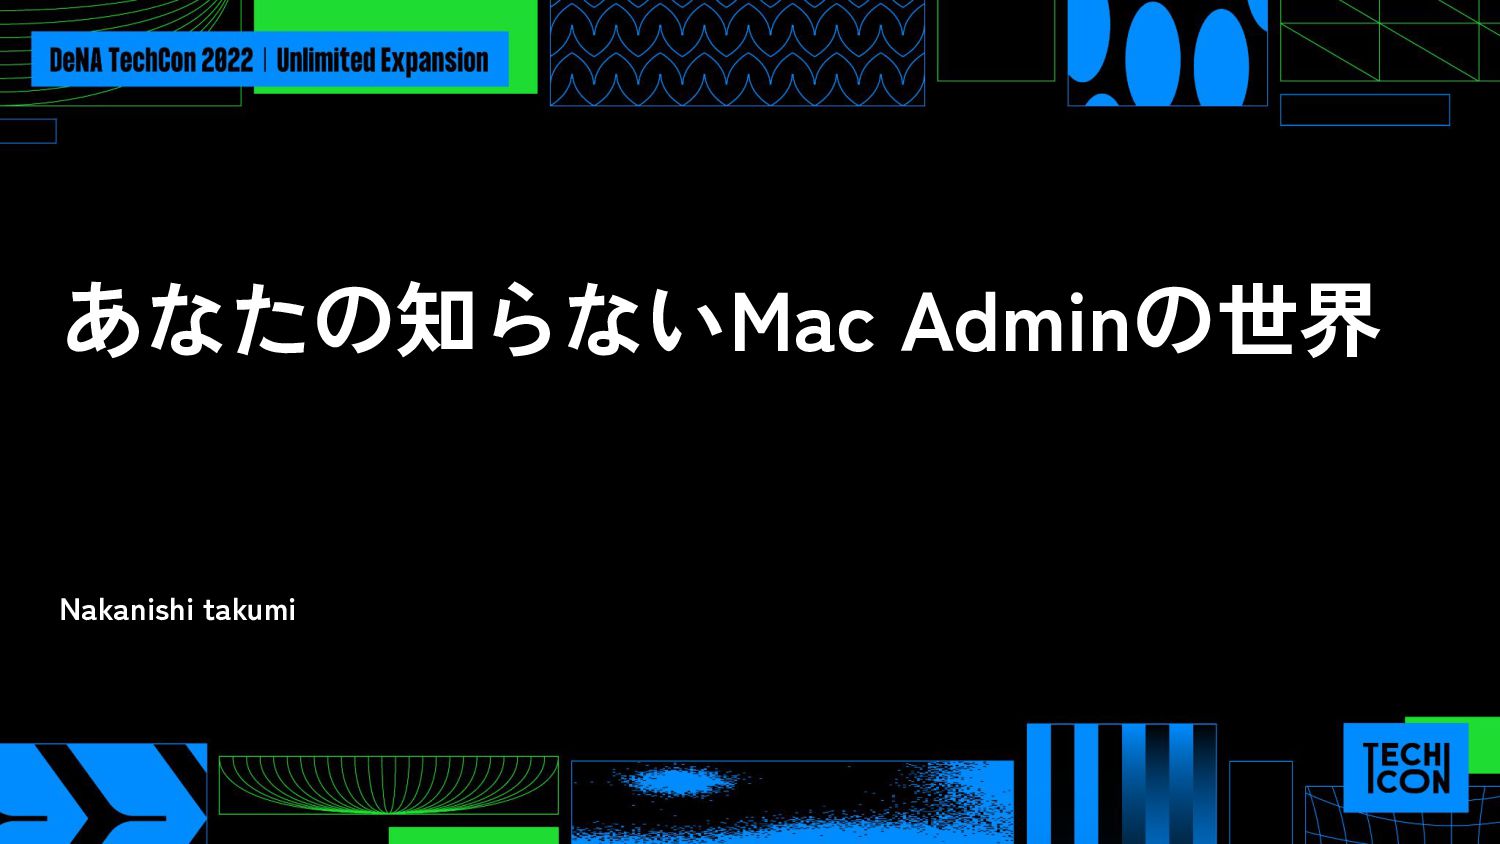 あなたの知らないMac Adminの世界